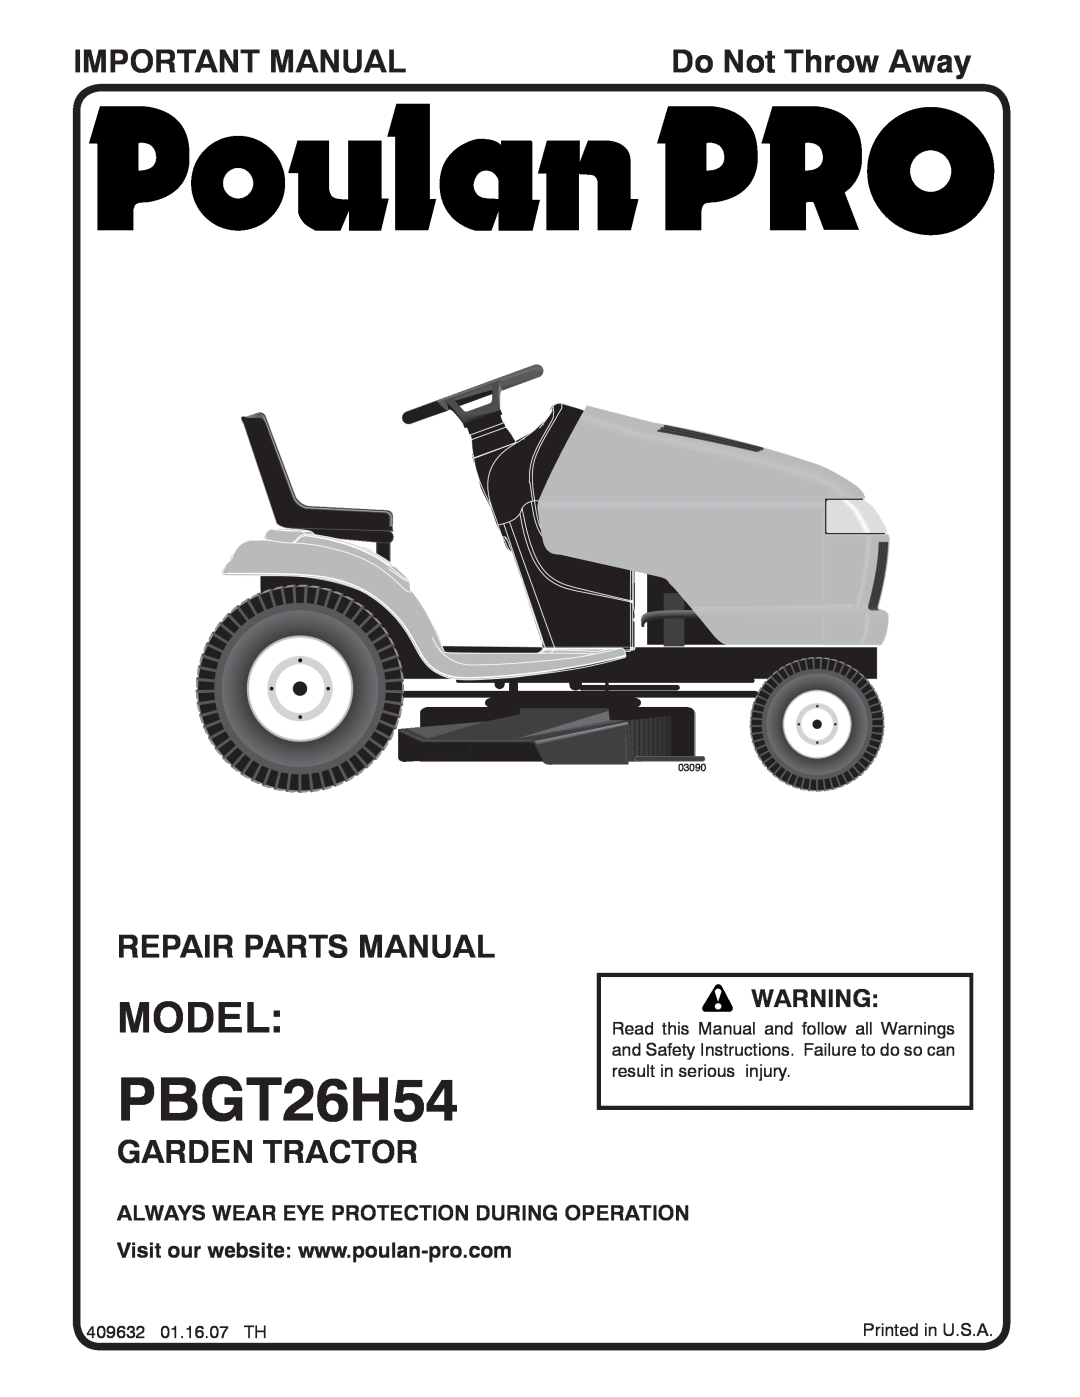 Poulan 96042004000 manual Model, Important Manual, Repair Parts Manual, Garden Tractor, Do Not Throw Away, PBGT26H54 